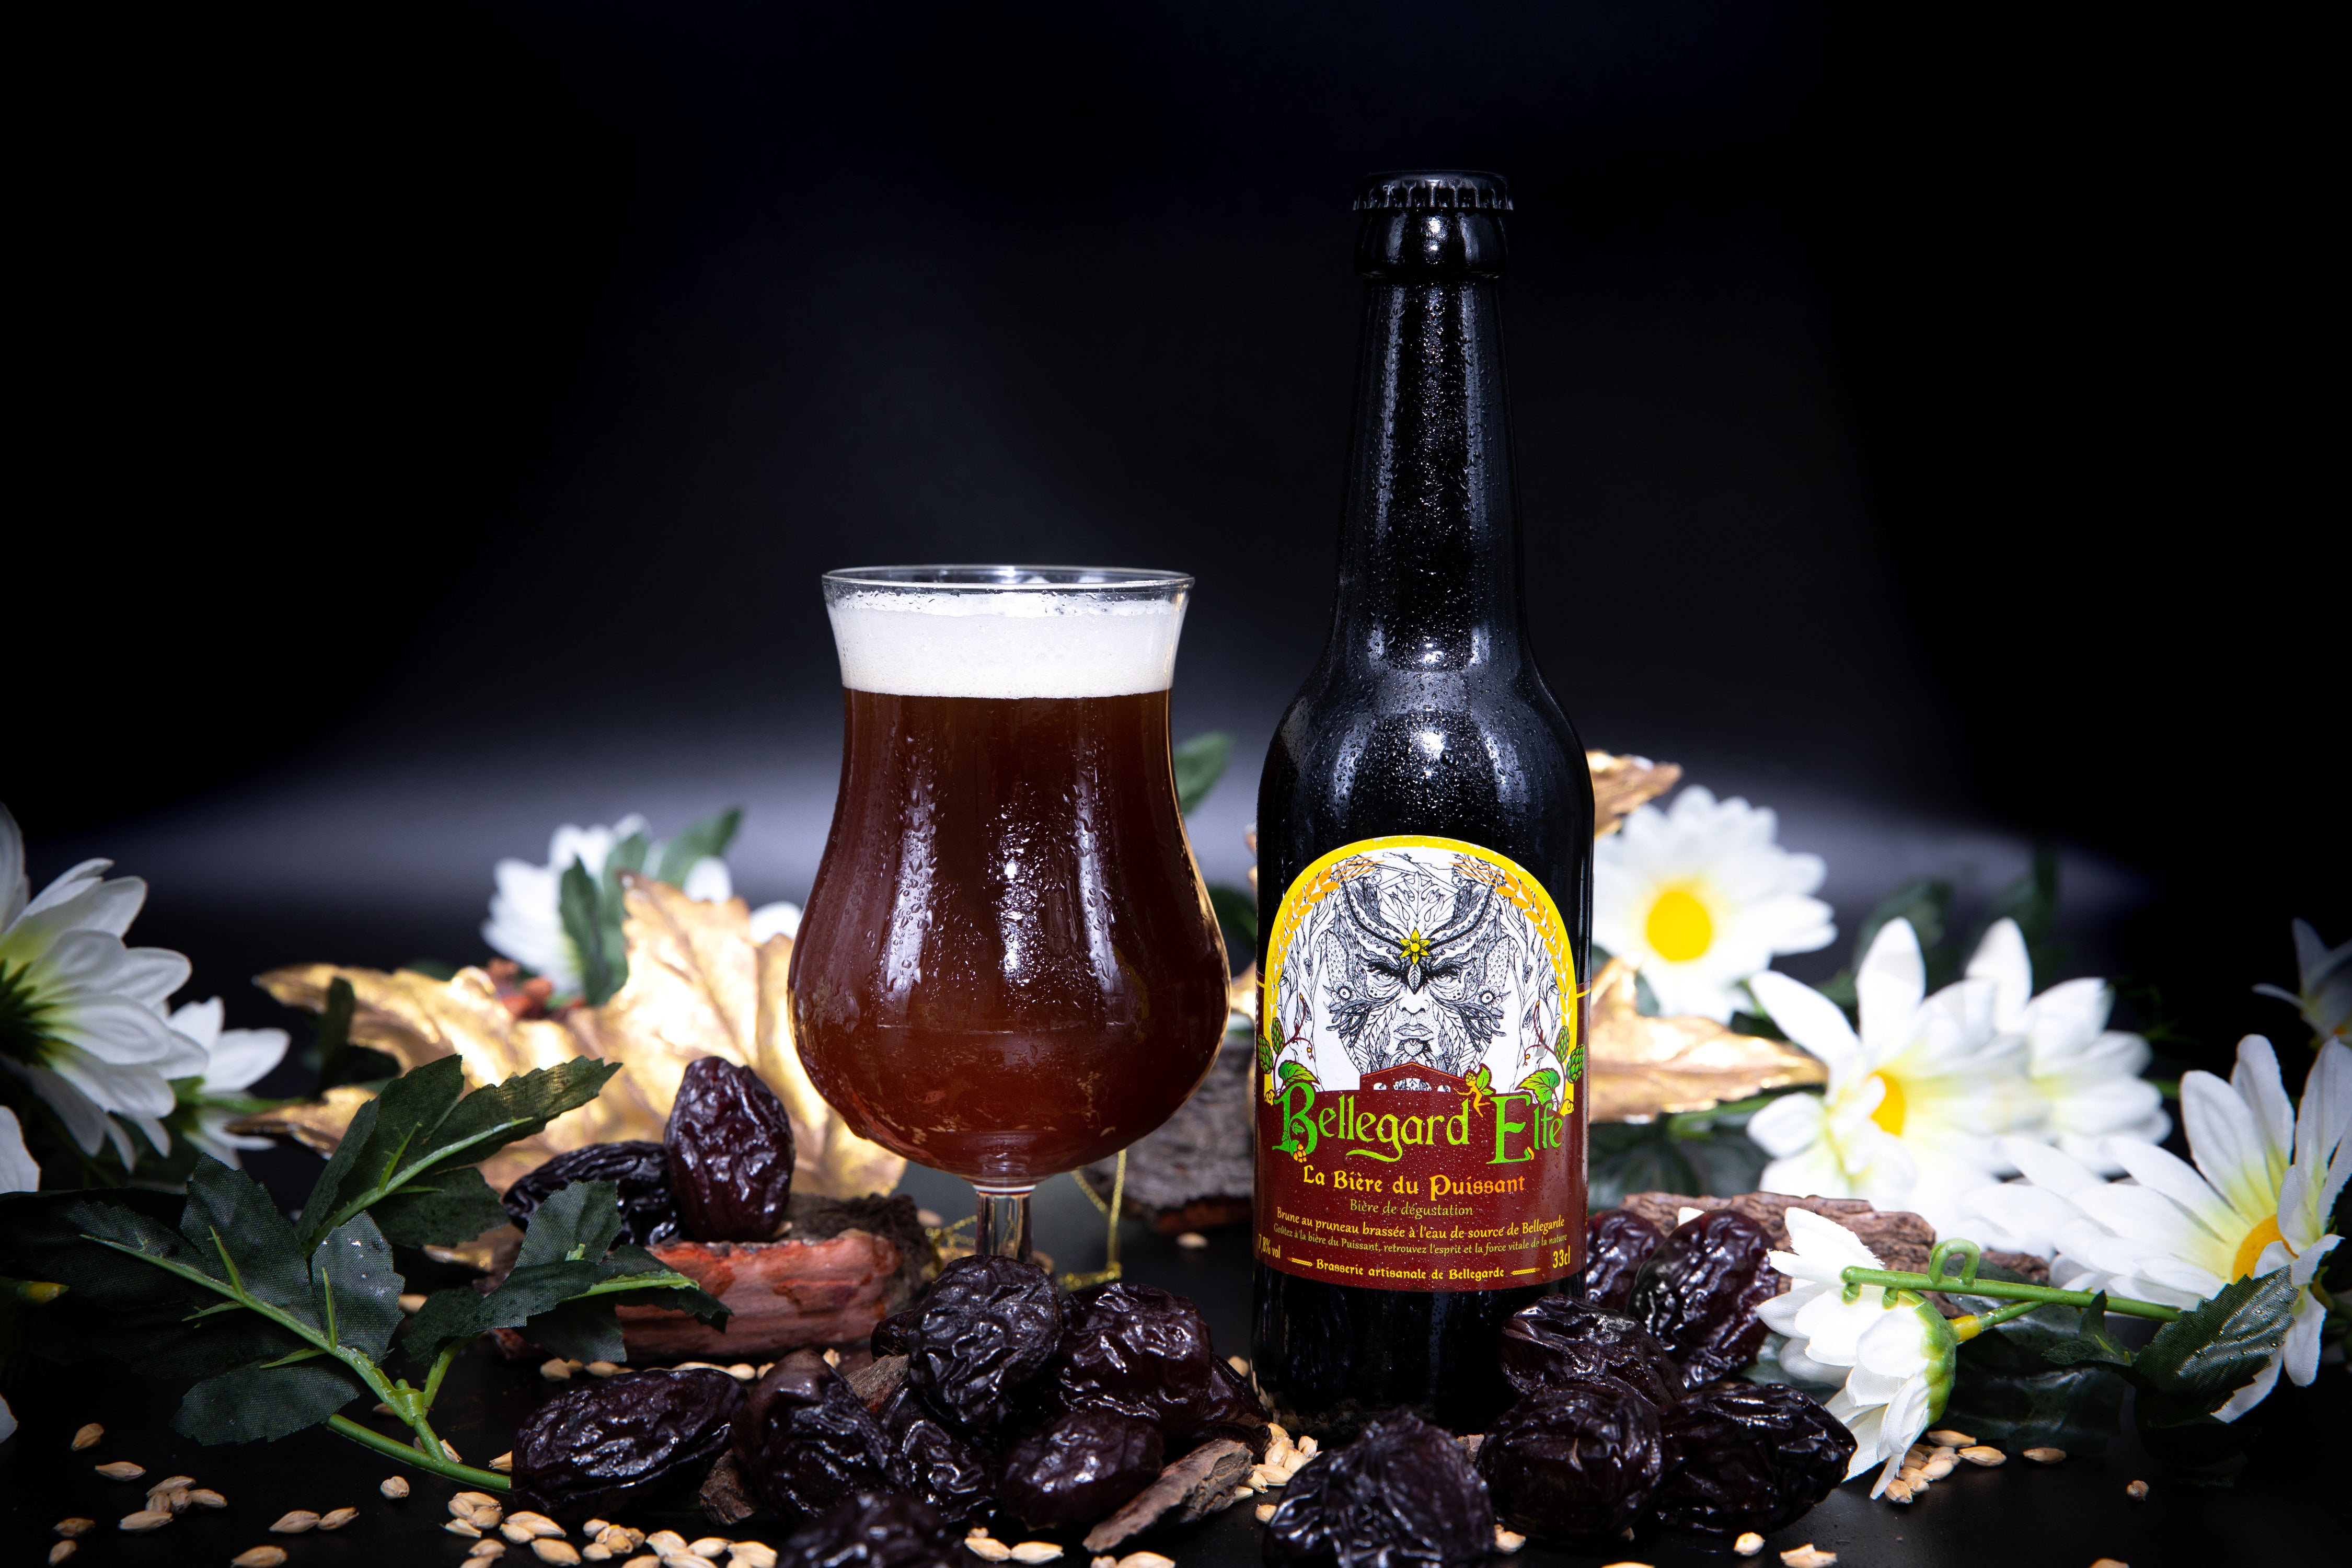 La Bière du Puissant, Bière artisanale brune aux fruits secs et pruneau par Bellegard'Elfe